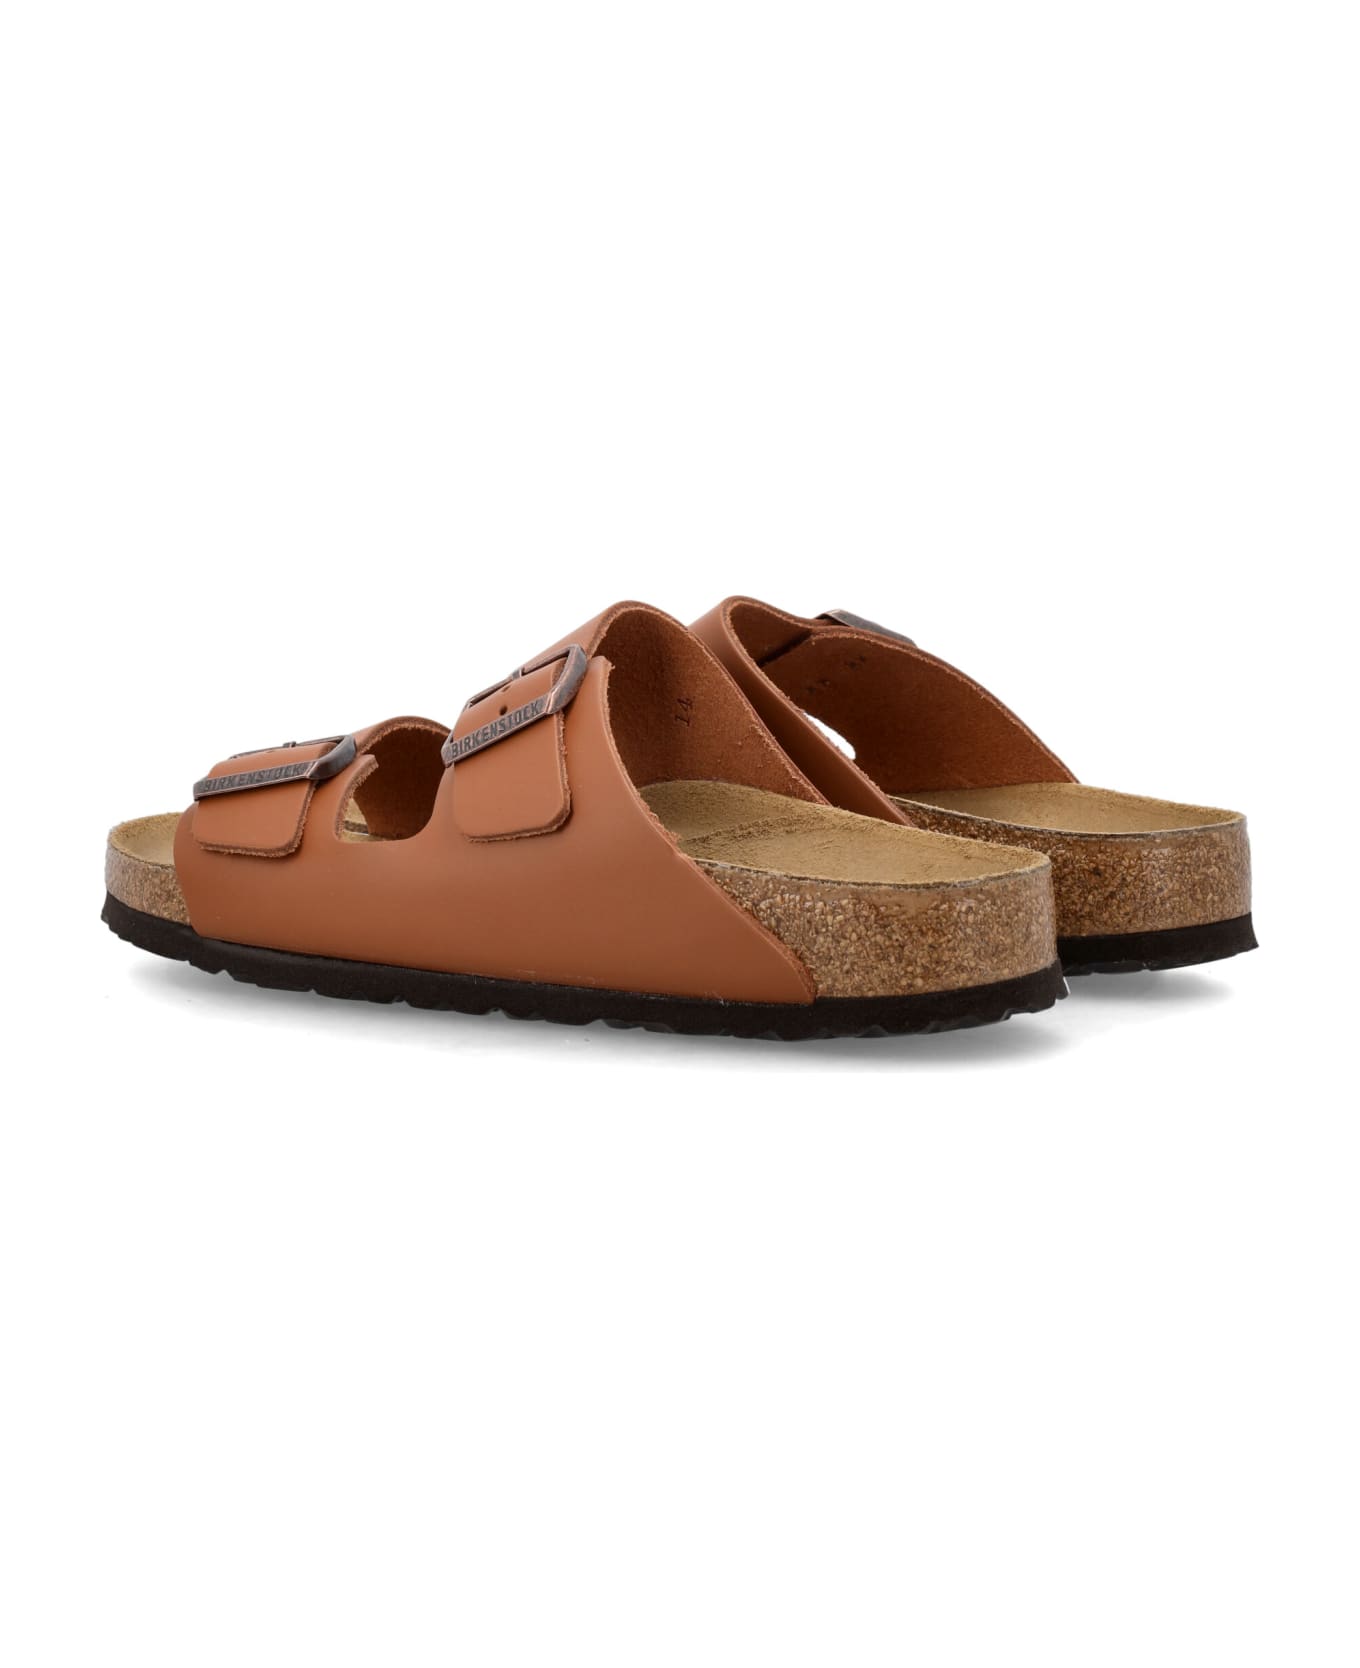 Birkenstock Arizona Sandals - GINGERBROWN